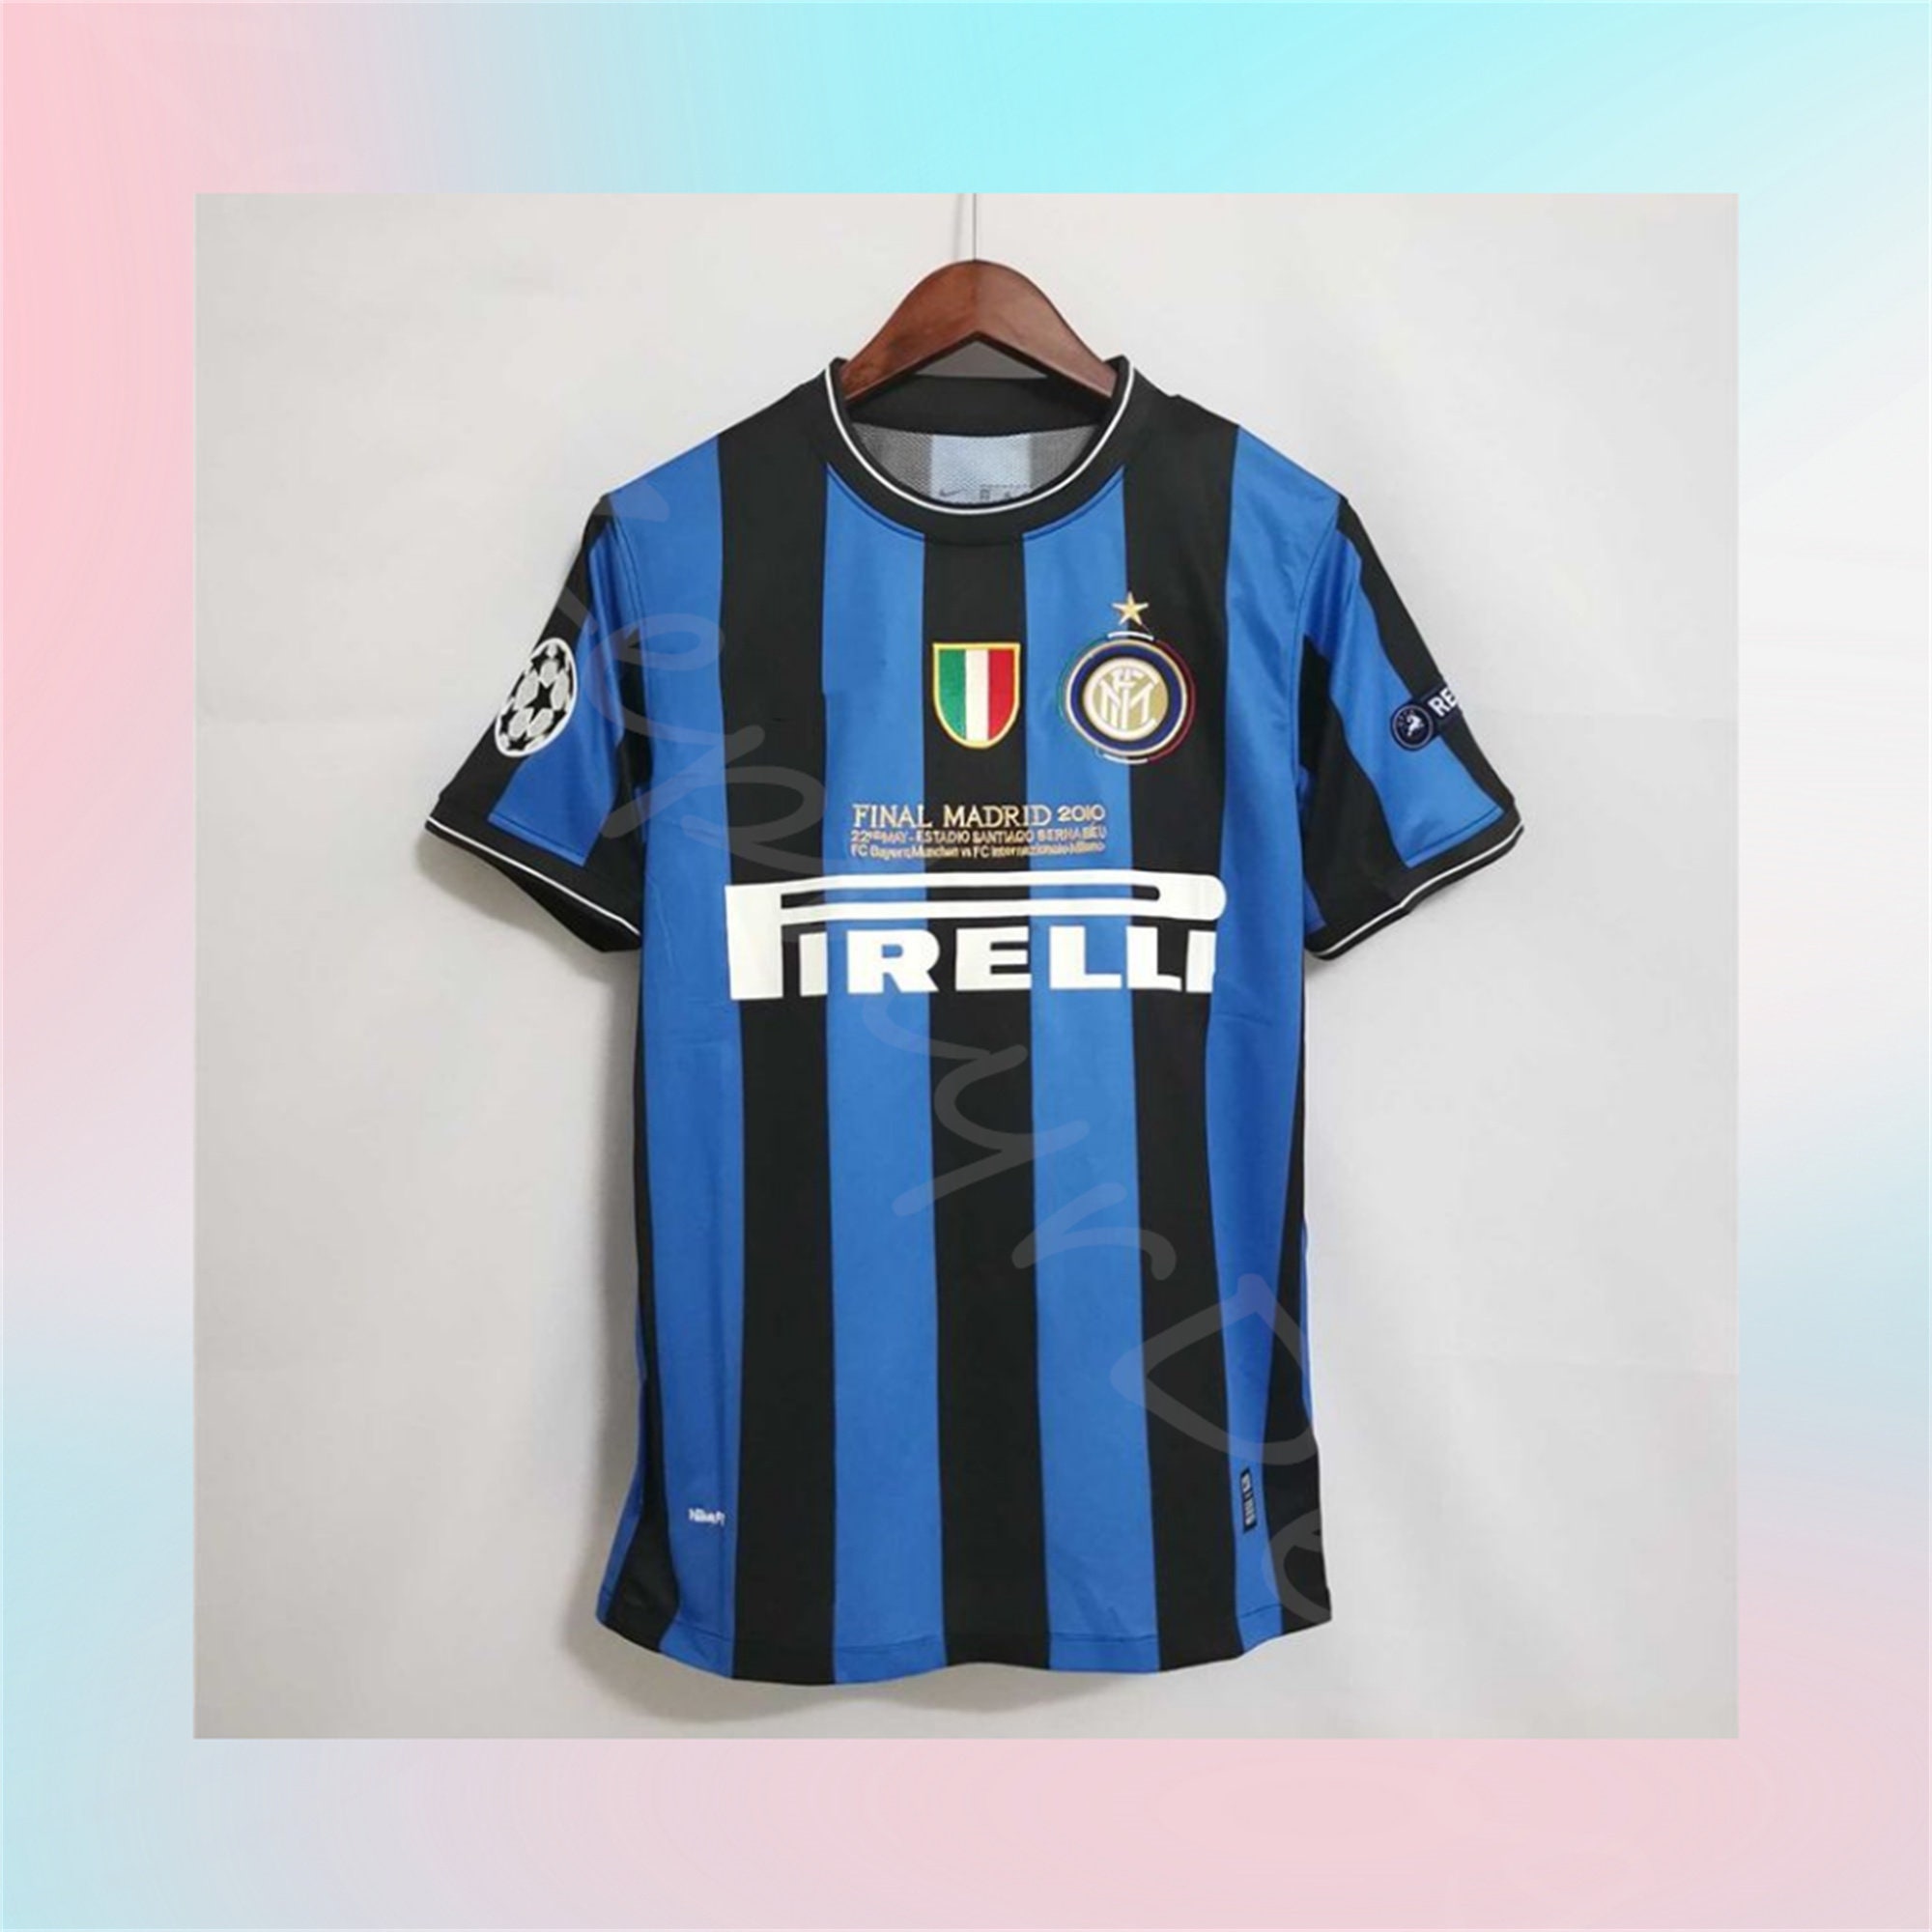  Ultras Inter Milan Retro #10 Soccer Jersey, Adult